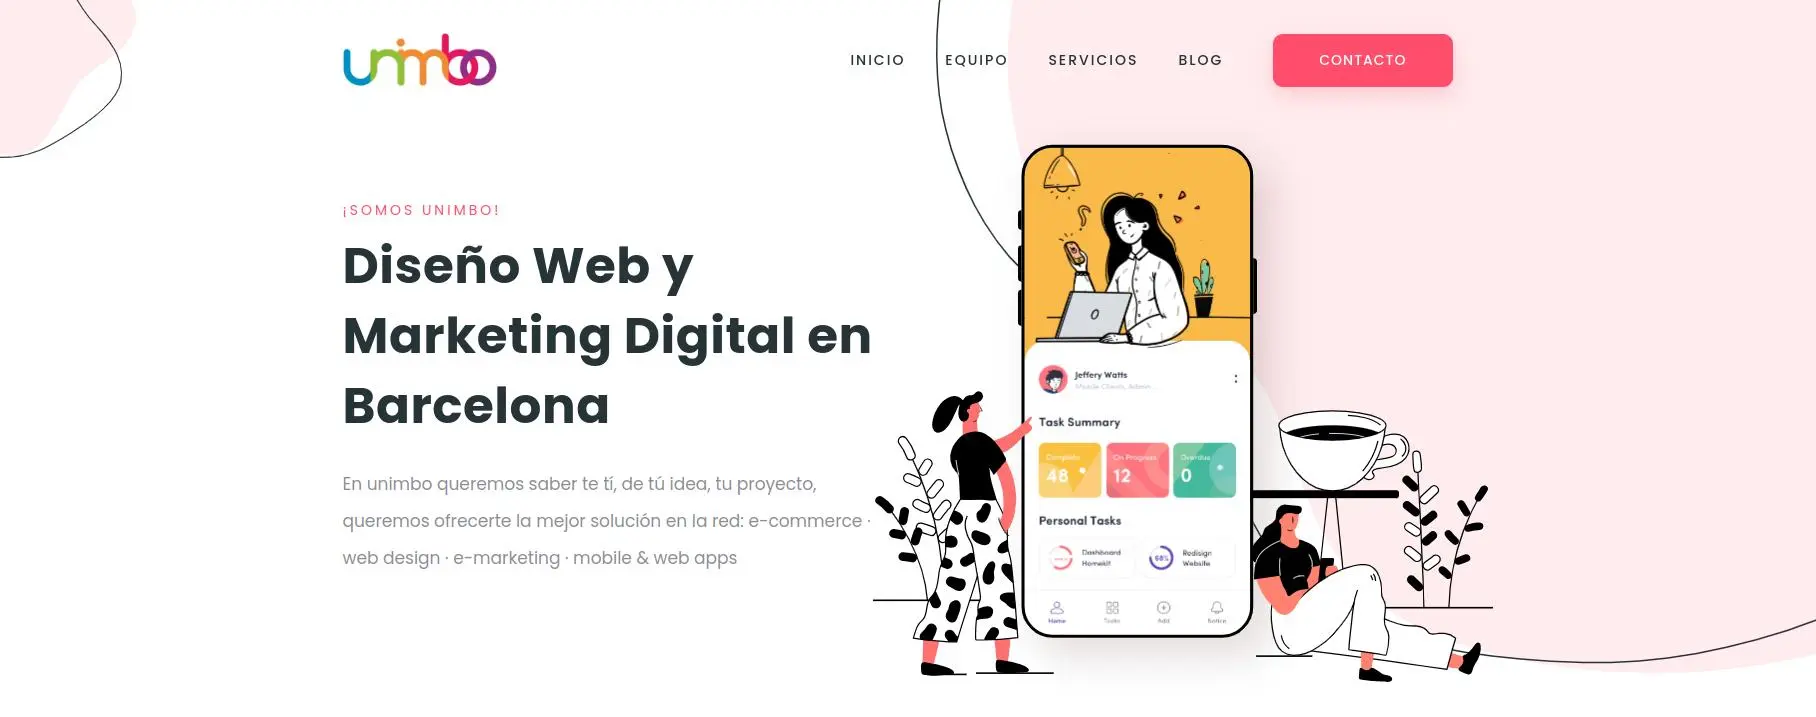 Página web de Unimbo la mejor agencia de diseño web en Barcelona. Realizan todo tipo de marketing digital, diseño web, creación de ecommerce, desarrollo de aplicaciones... Vemos ver su logo y el texto de cabecera de su web "Diseño Web y Marketing Digital en Barcelona"